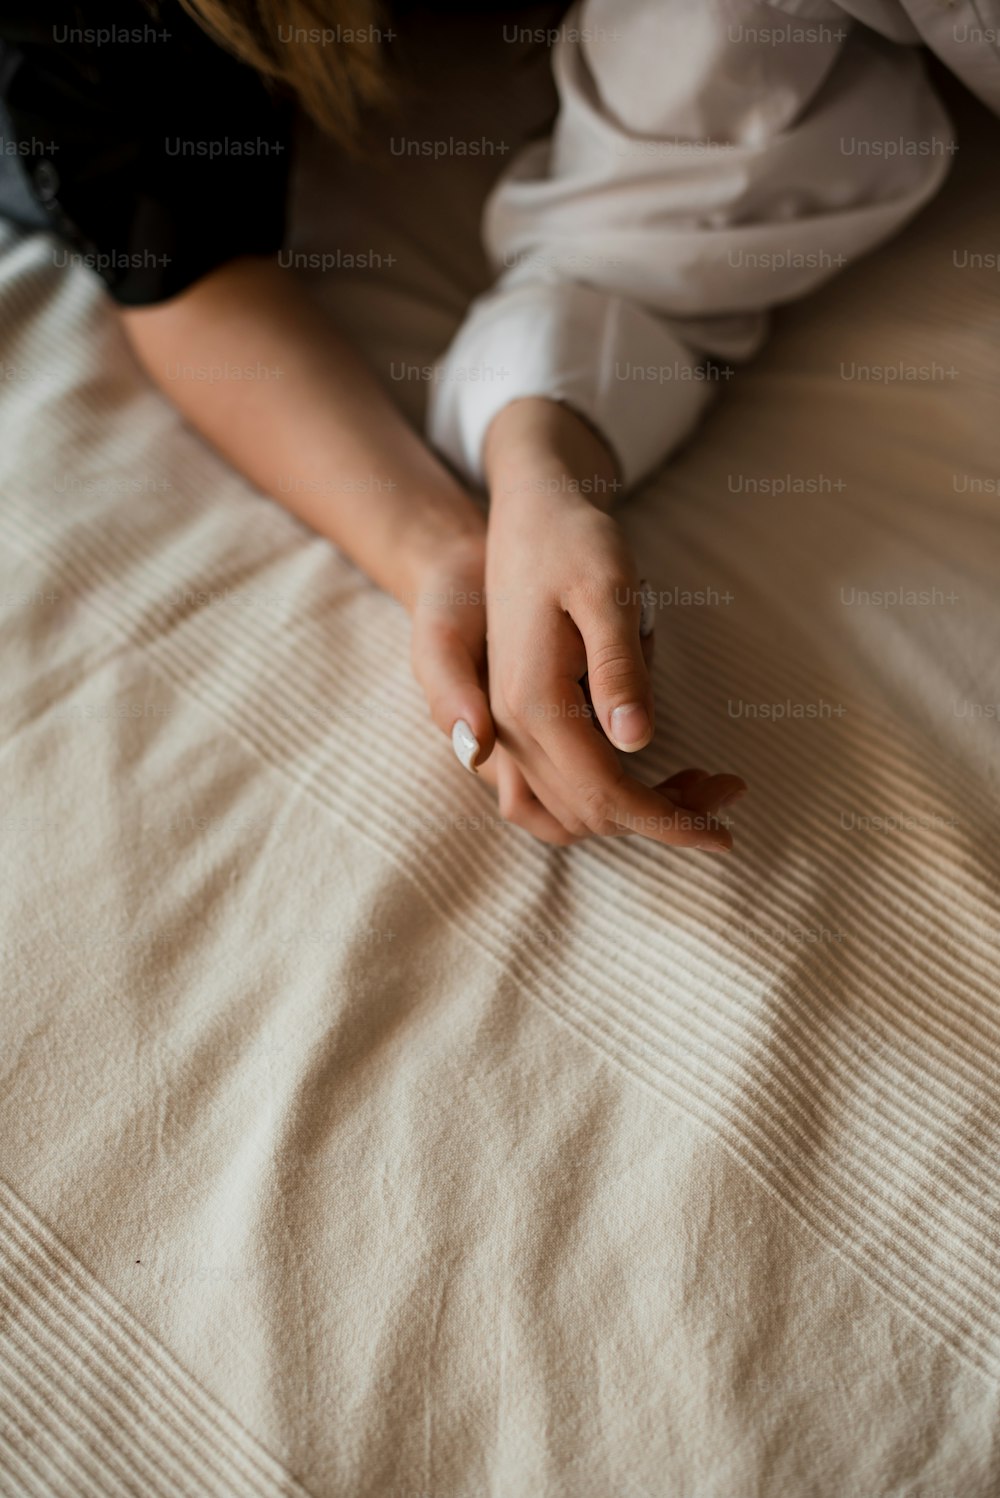 枕に手を置いた状態でベッドに横たわる女性